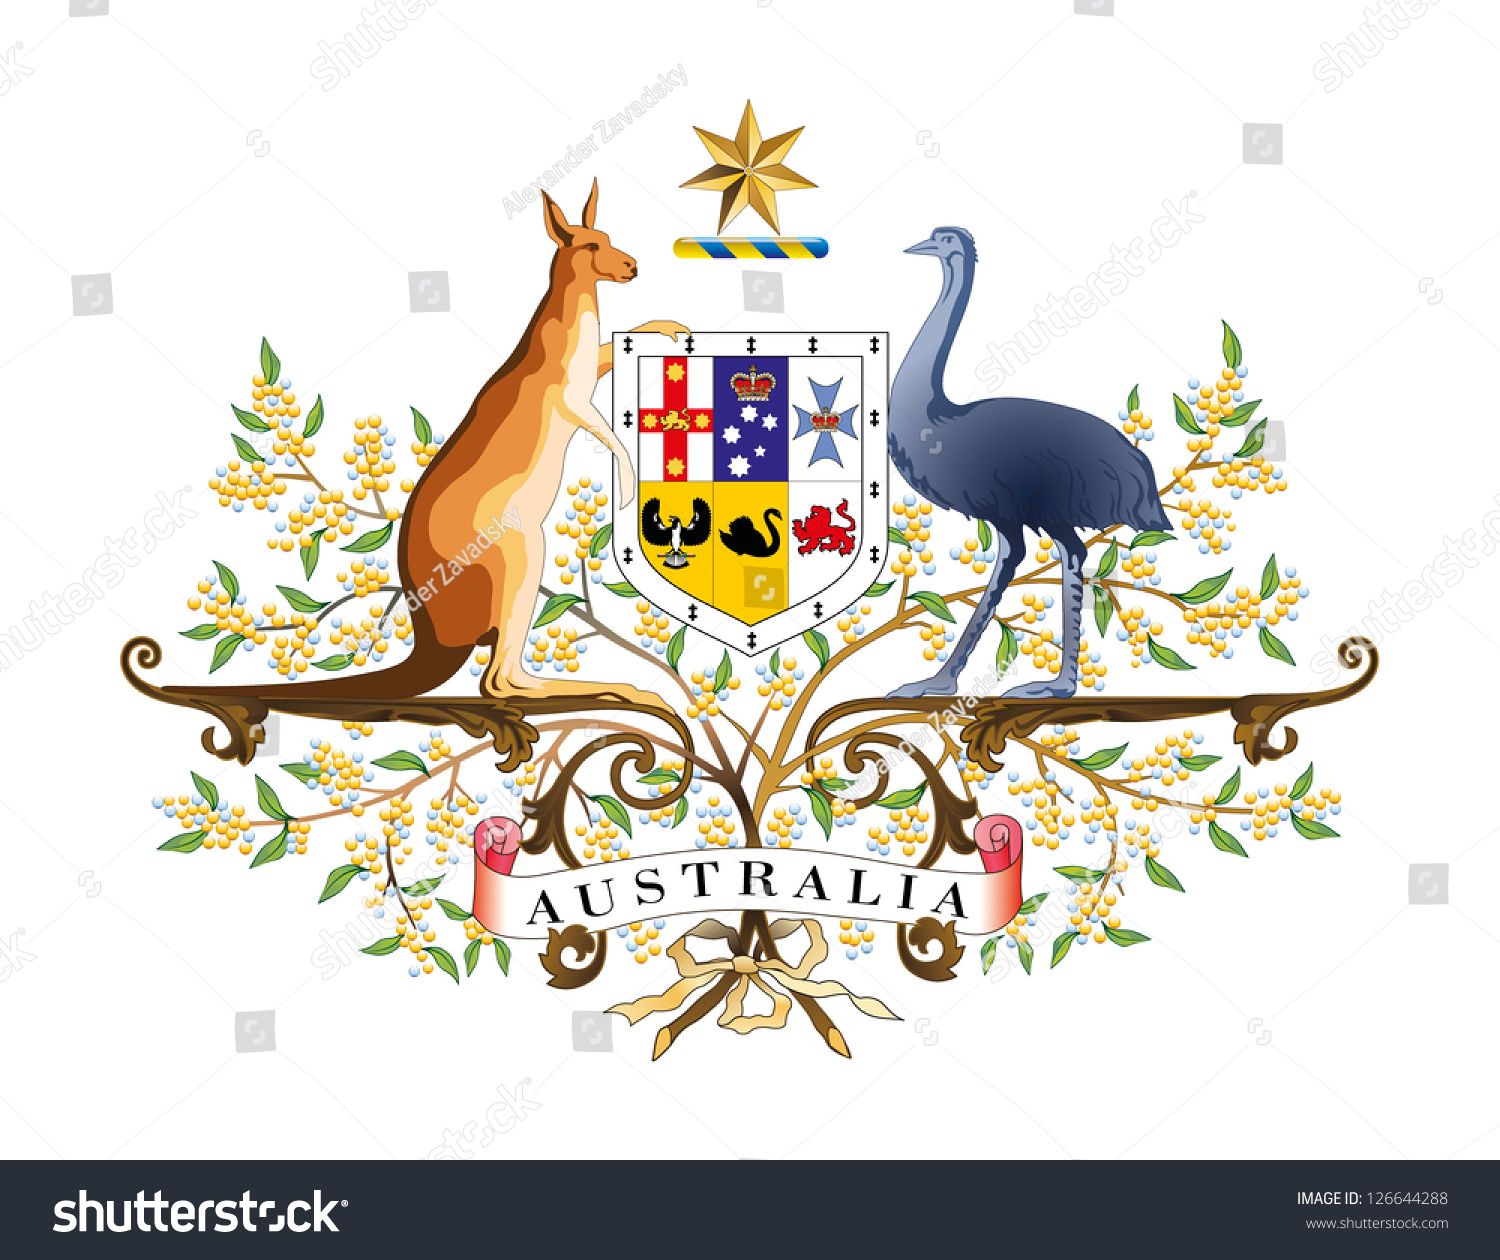 澳大利亚的向量盾徽-教育,符号/标志-海洛创意(hello)